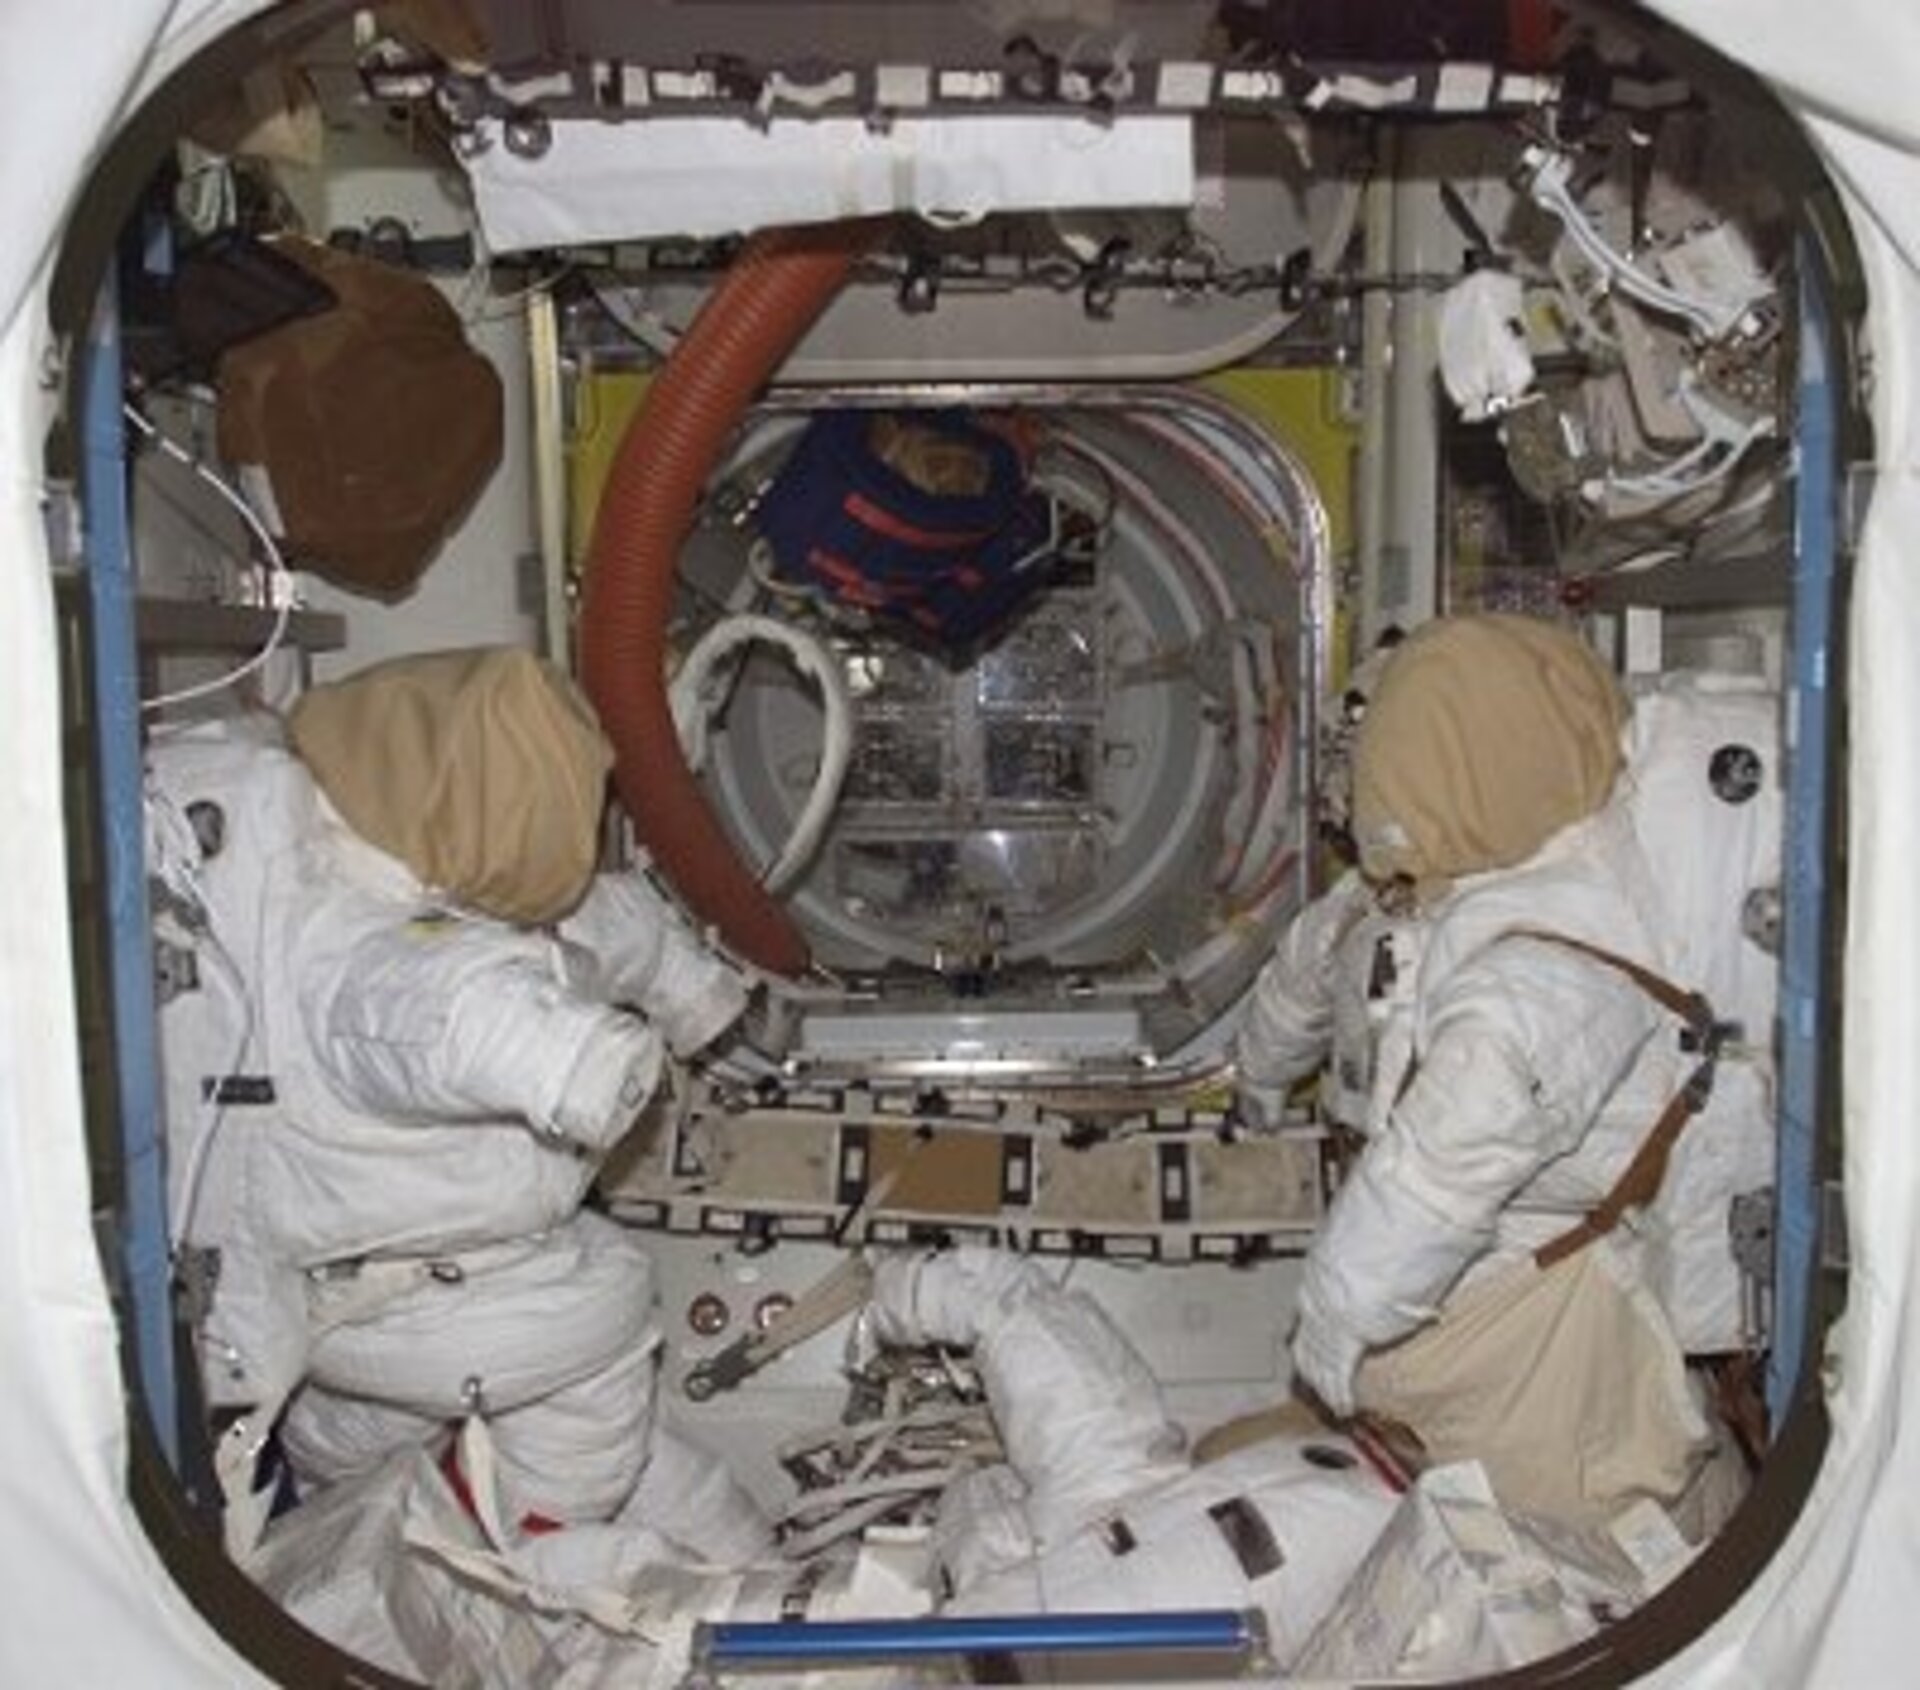 Beamer och jag sover i rymdstationens luftsluss igen